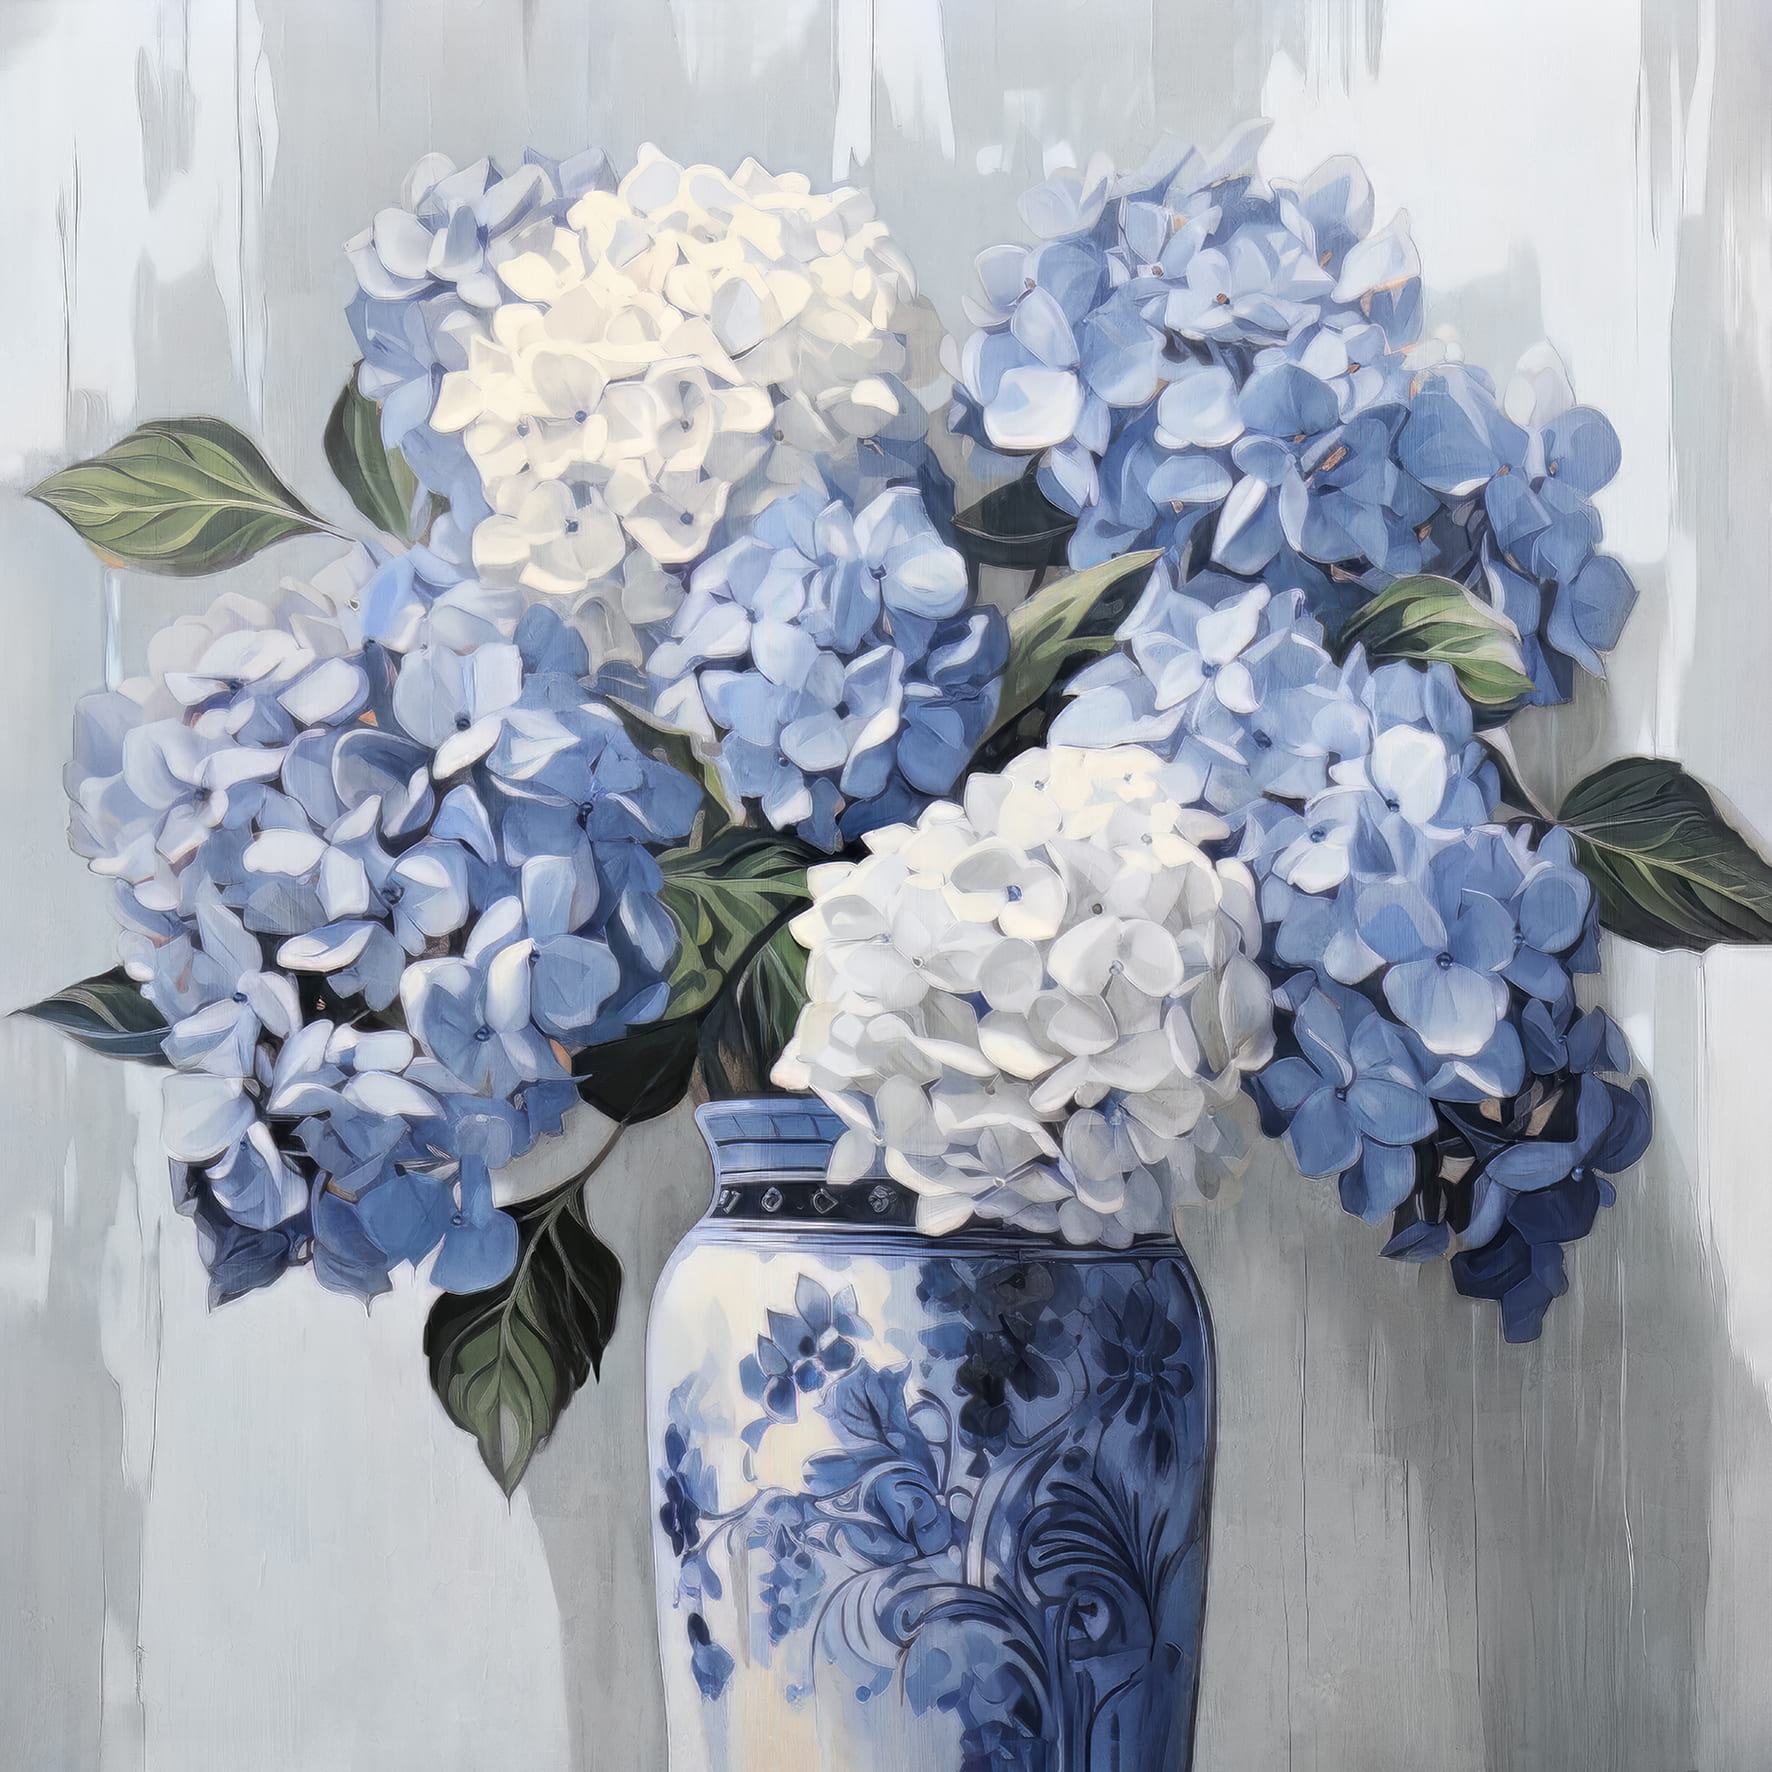 Ölbild Hortensien in der Vase 70x70cm